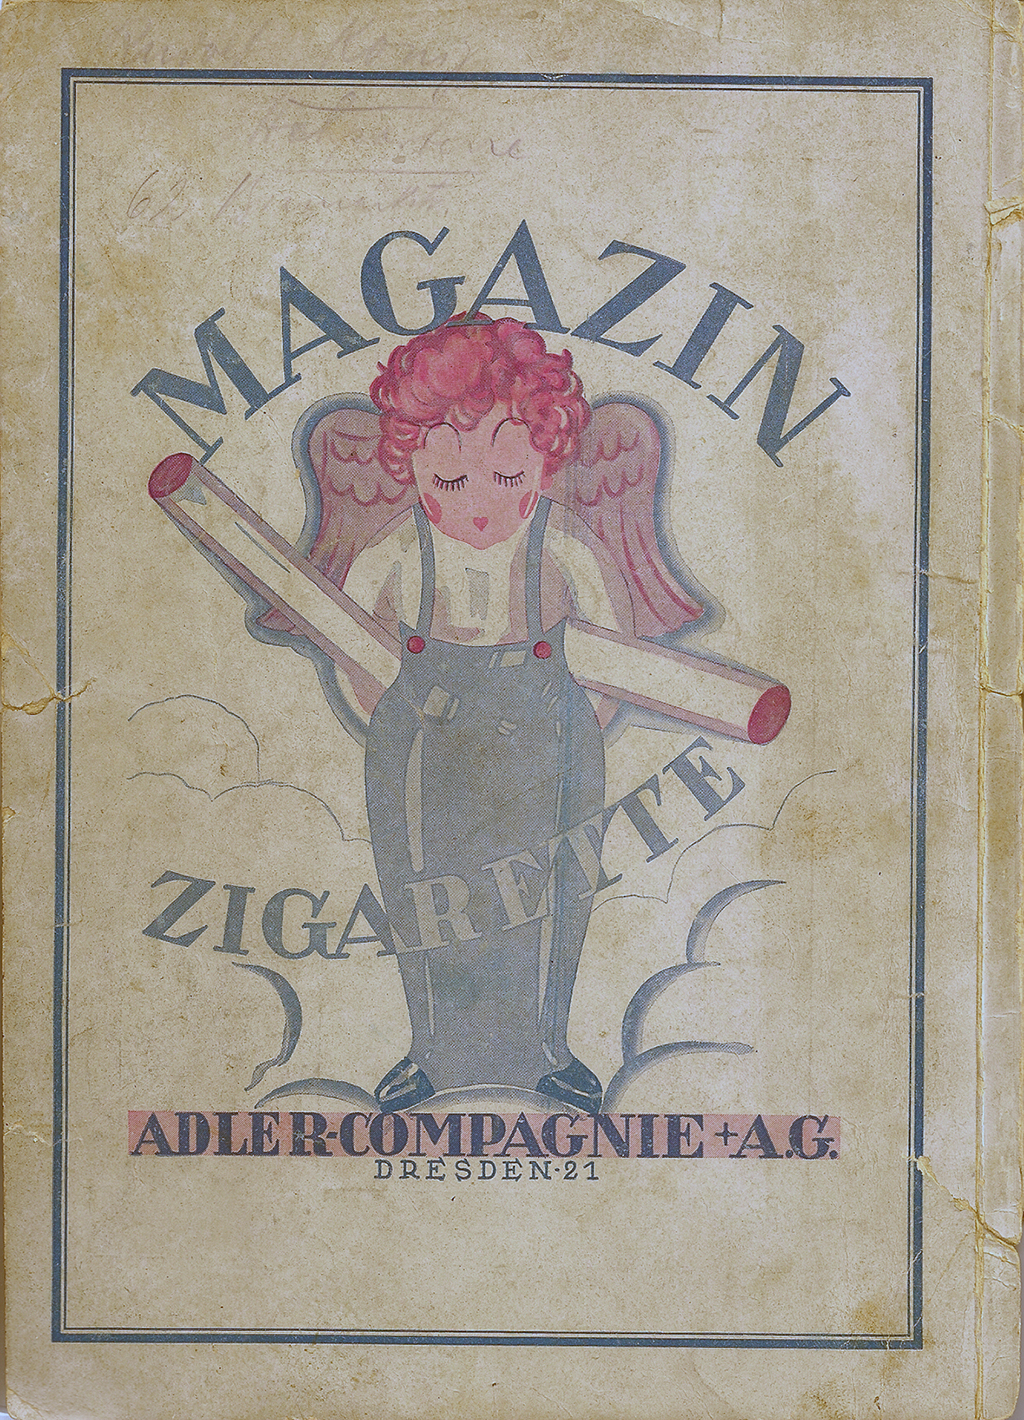 Magazin Zigarette Anzeige 1926